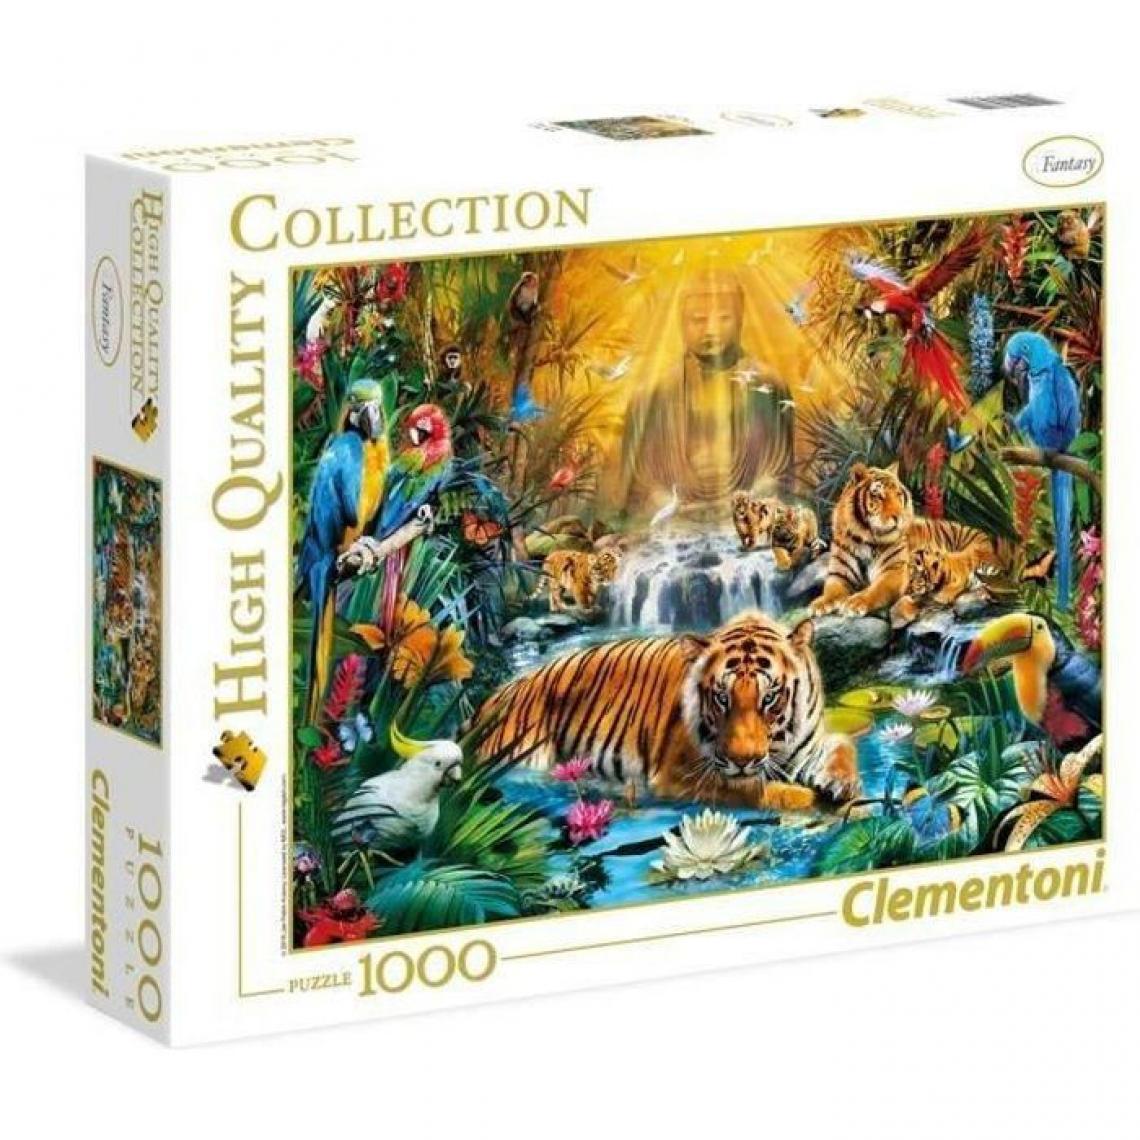 Clementoni - PUZZLE 1000 pieces - Le tigre mystique - Animaux